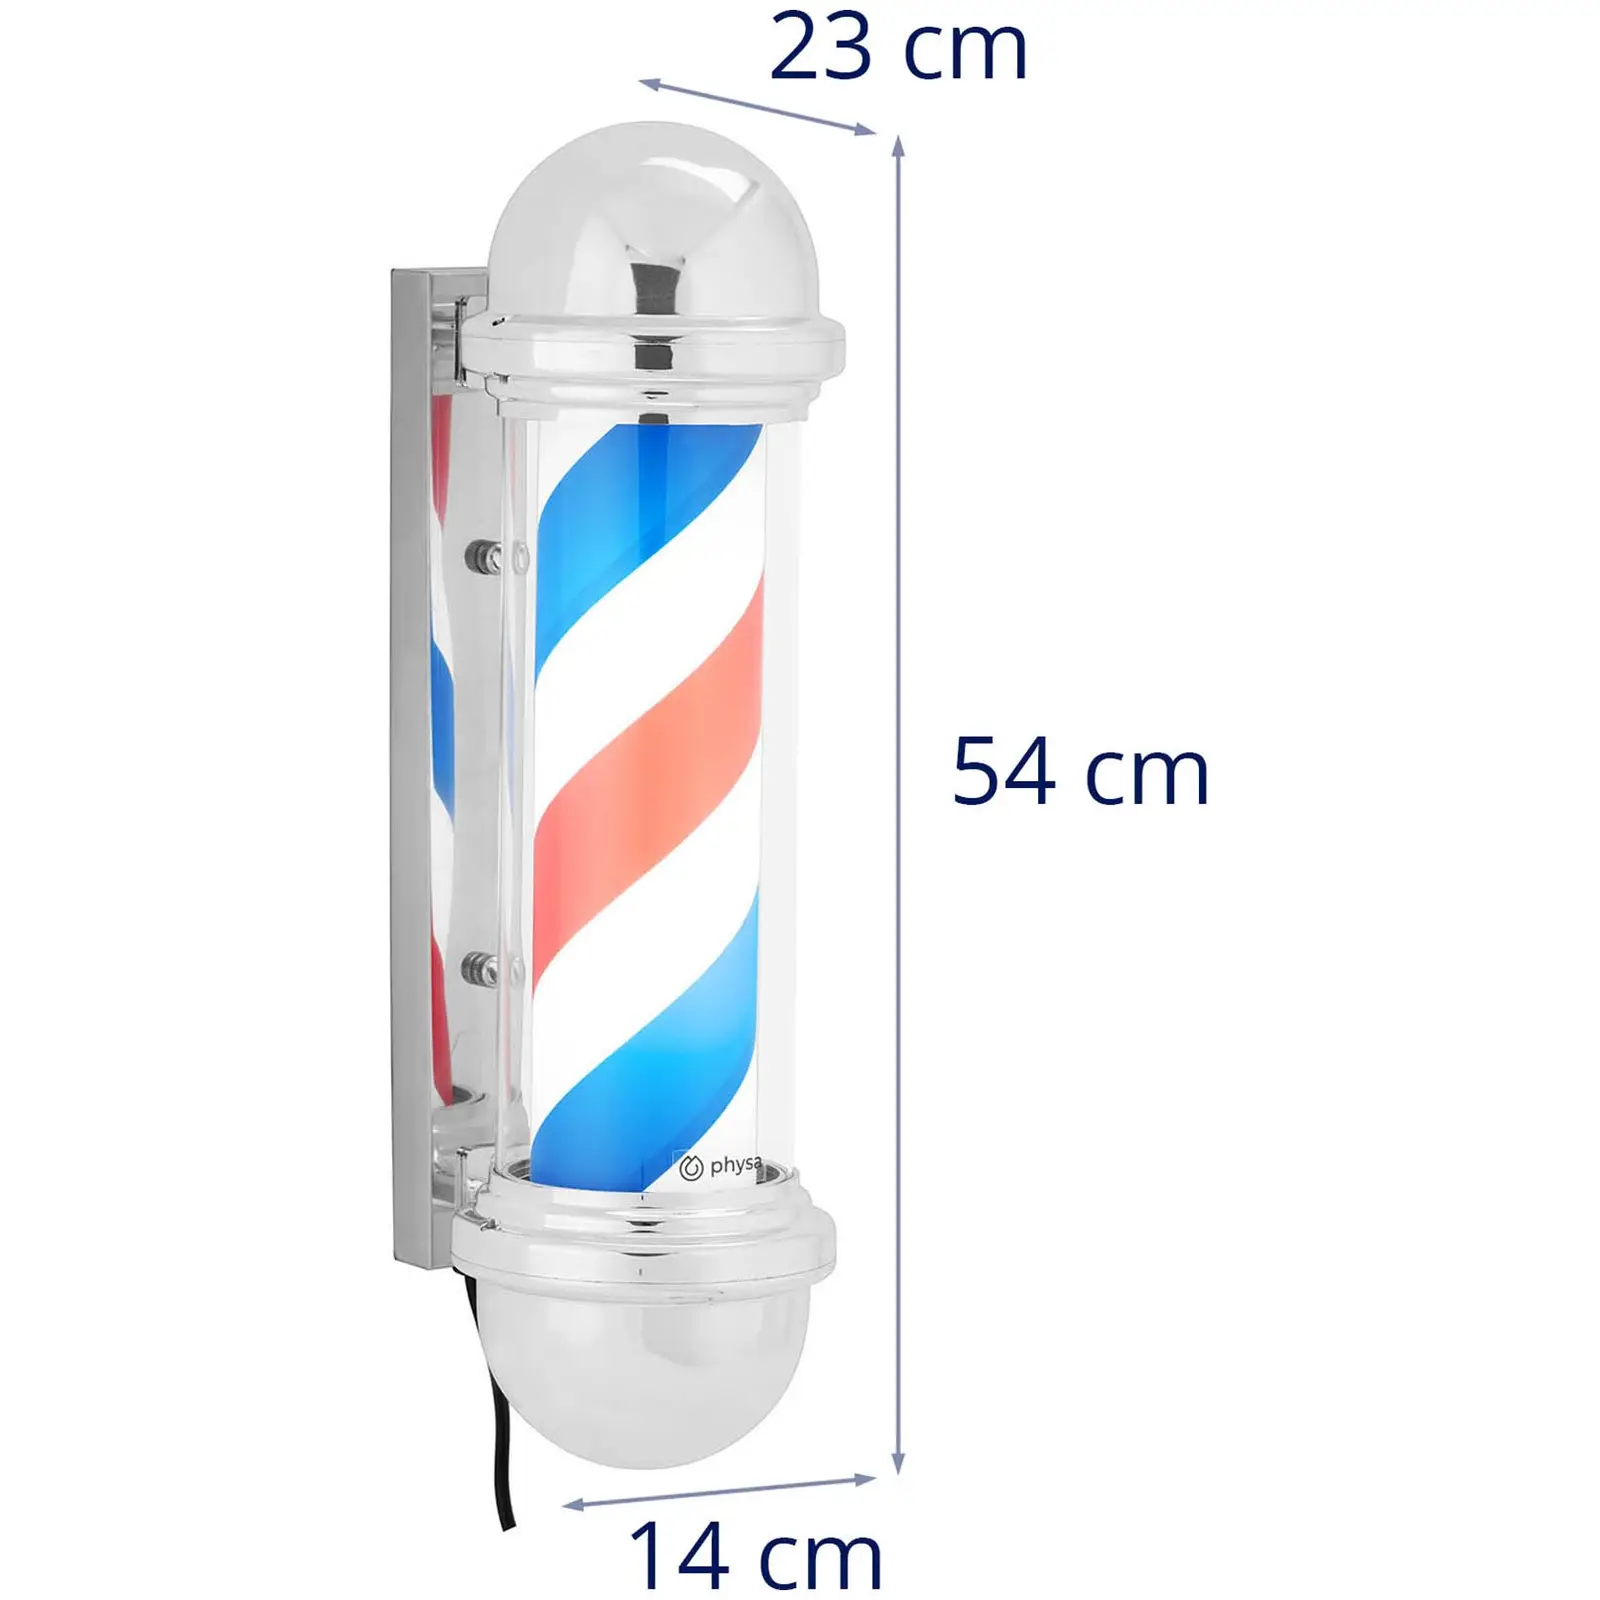 Barber pole - rotační a osvětlená - výška 300 mm - vzdálenost od stěny 22 cm - stříbrný rám